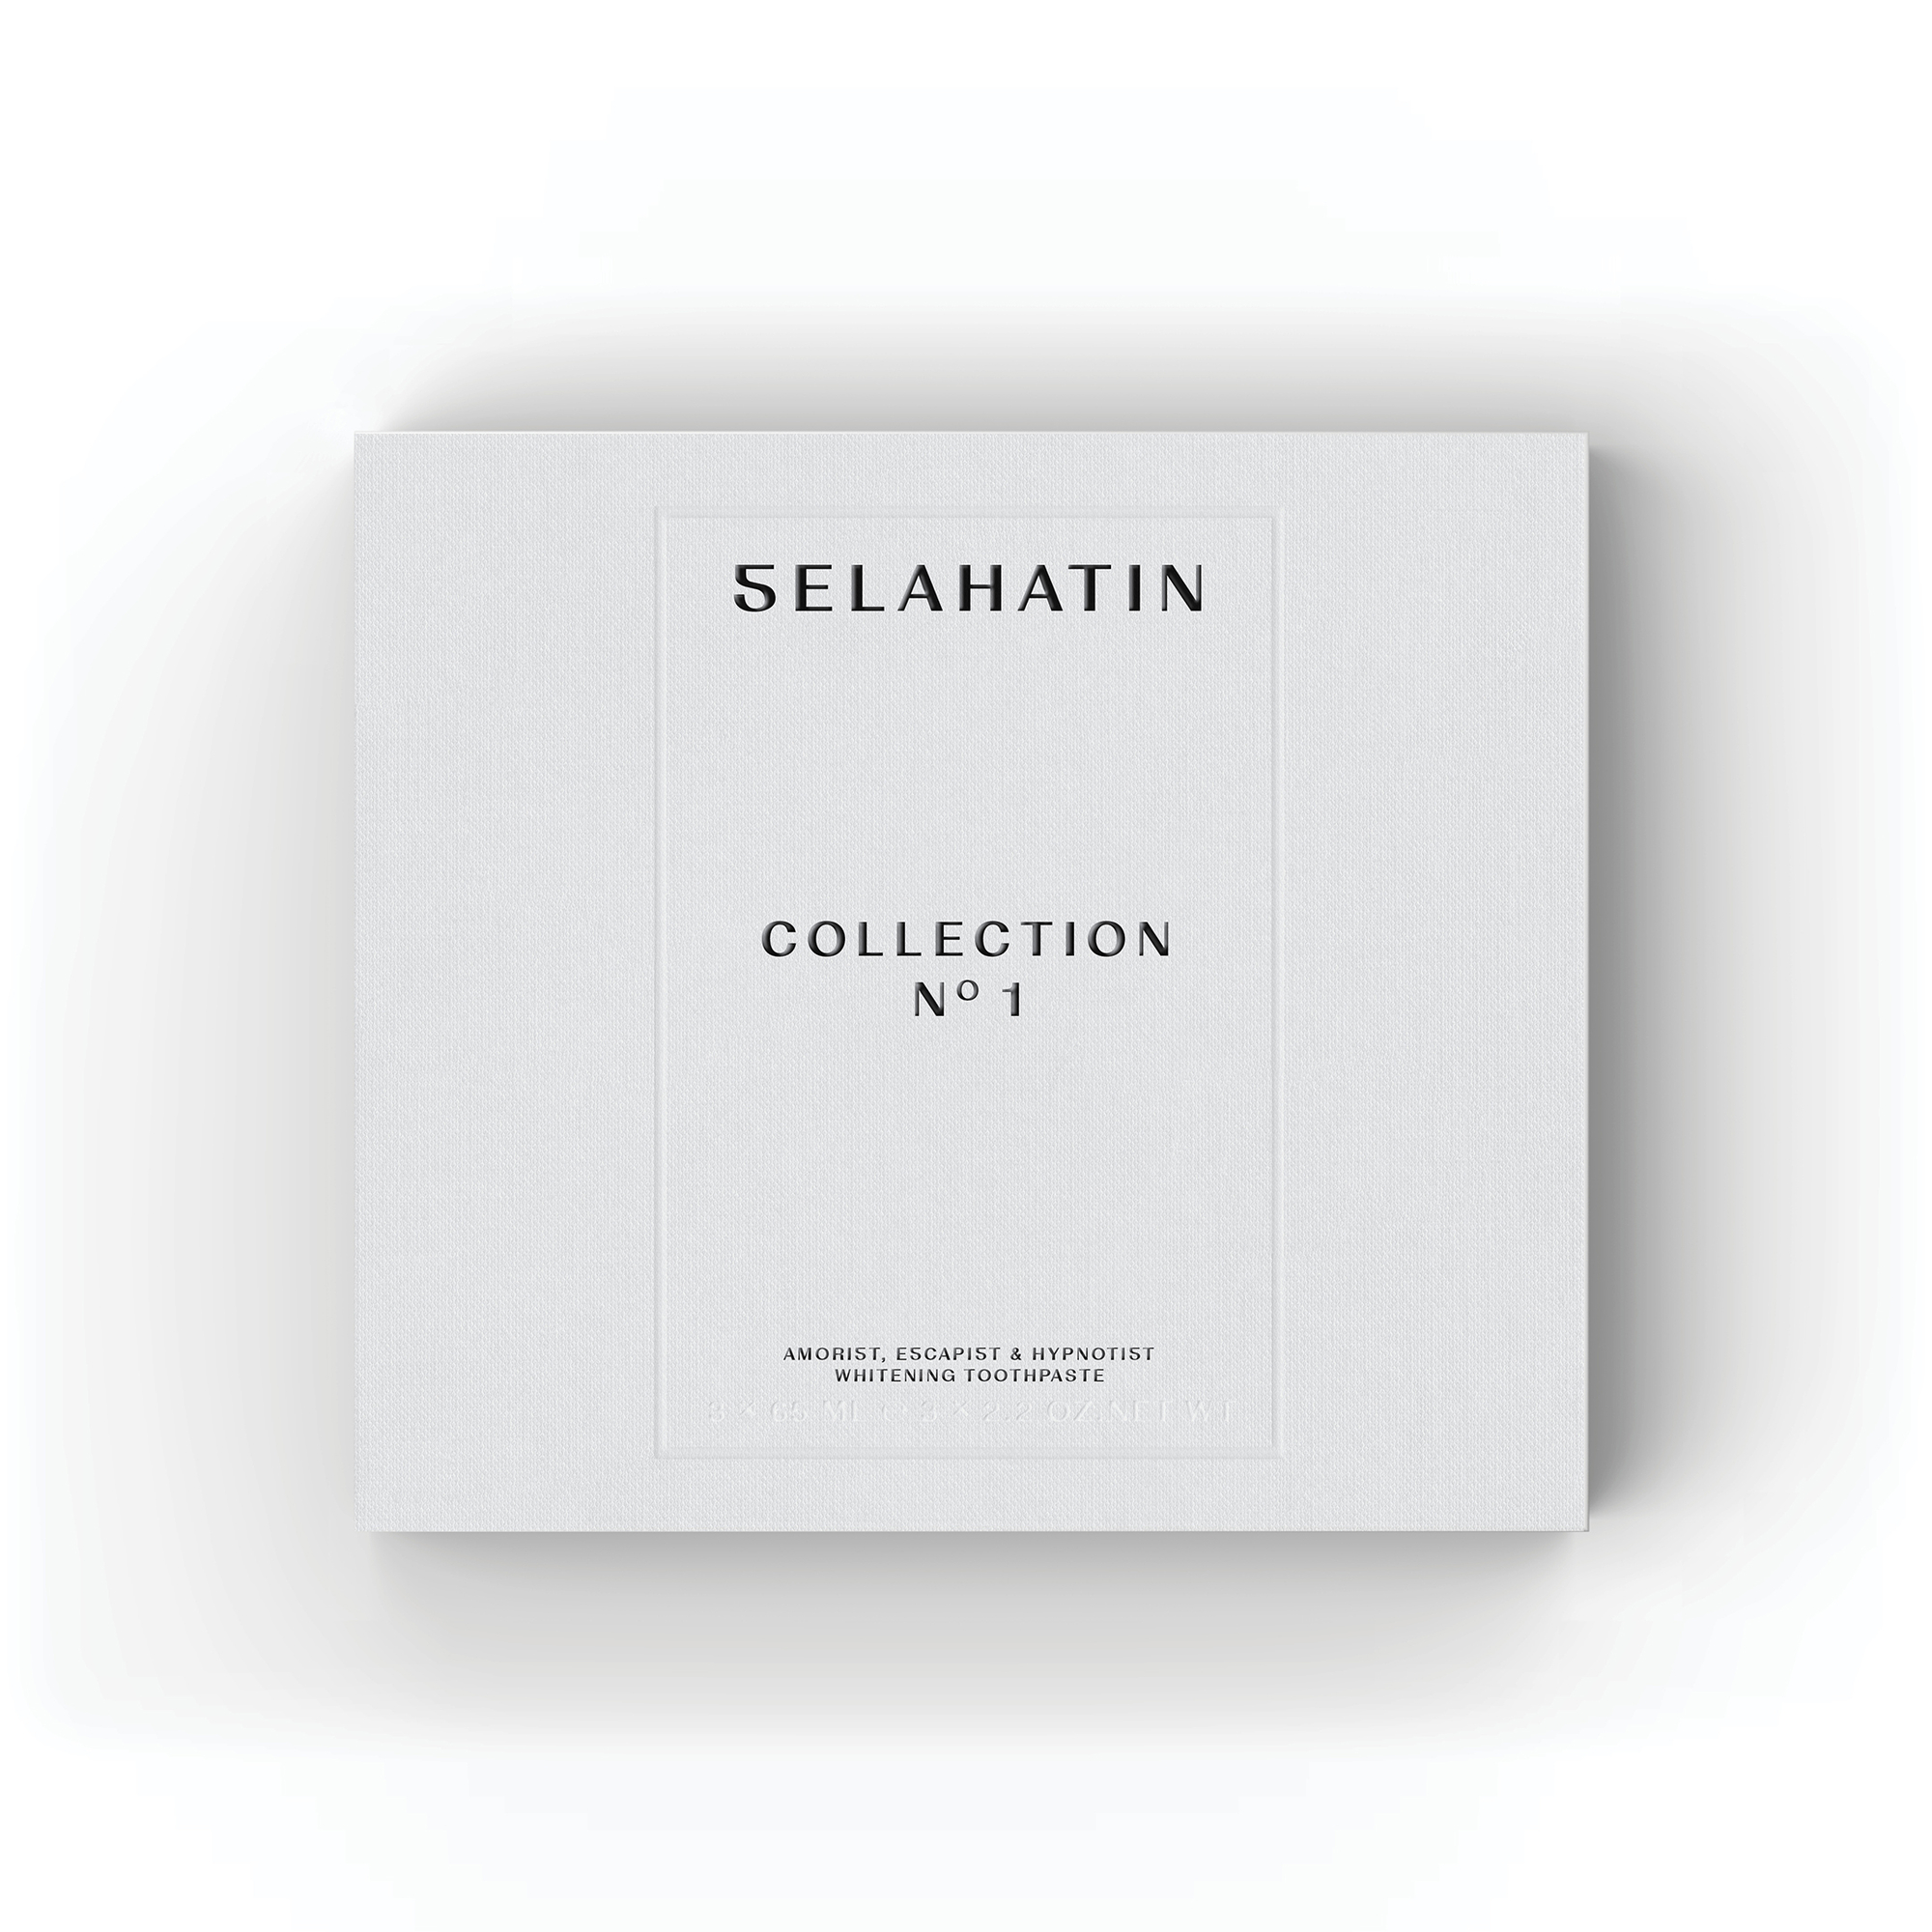 Selahatin - Collection No 1 fogkrém szett